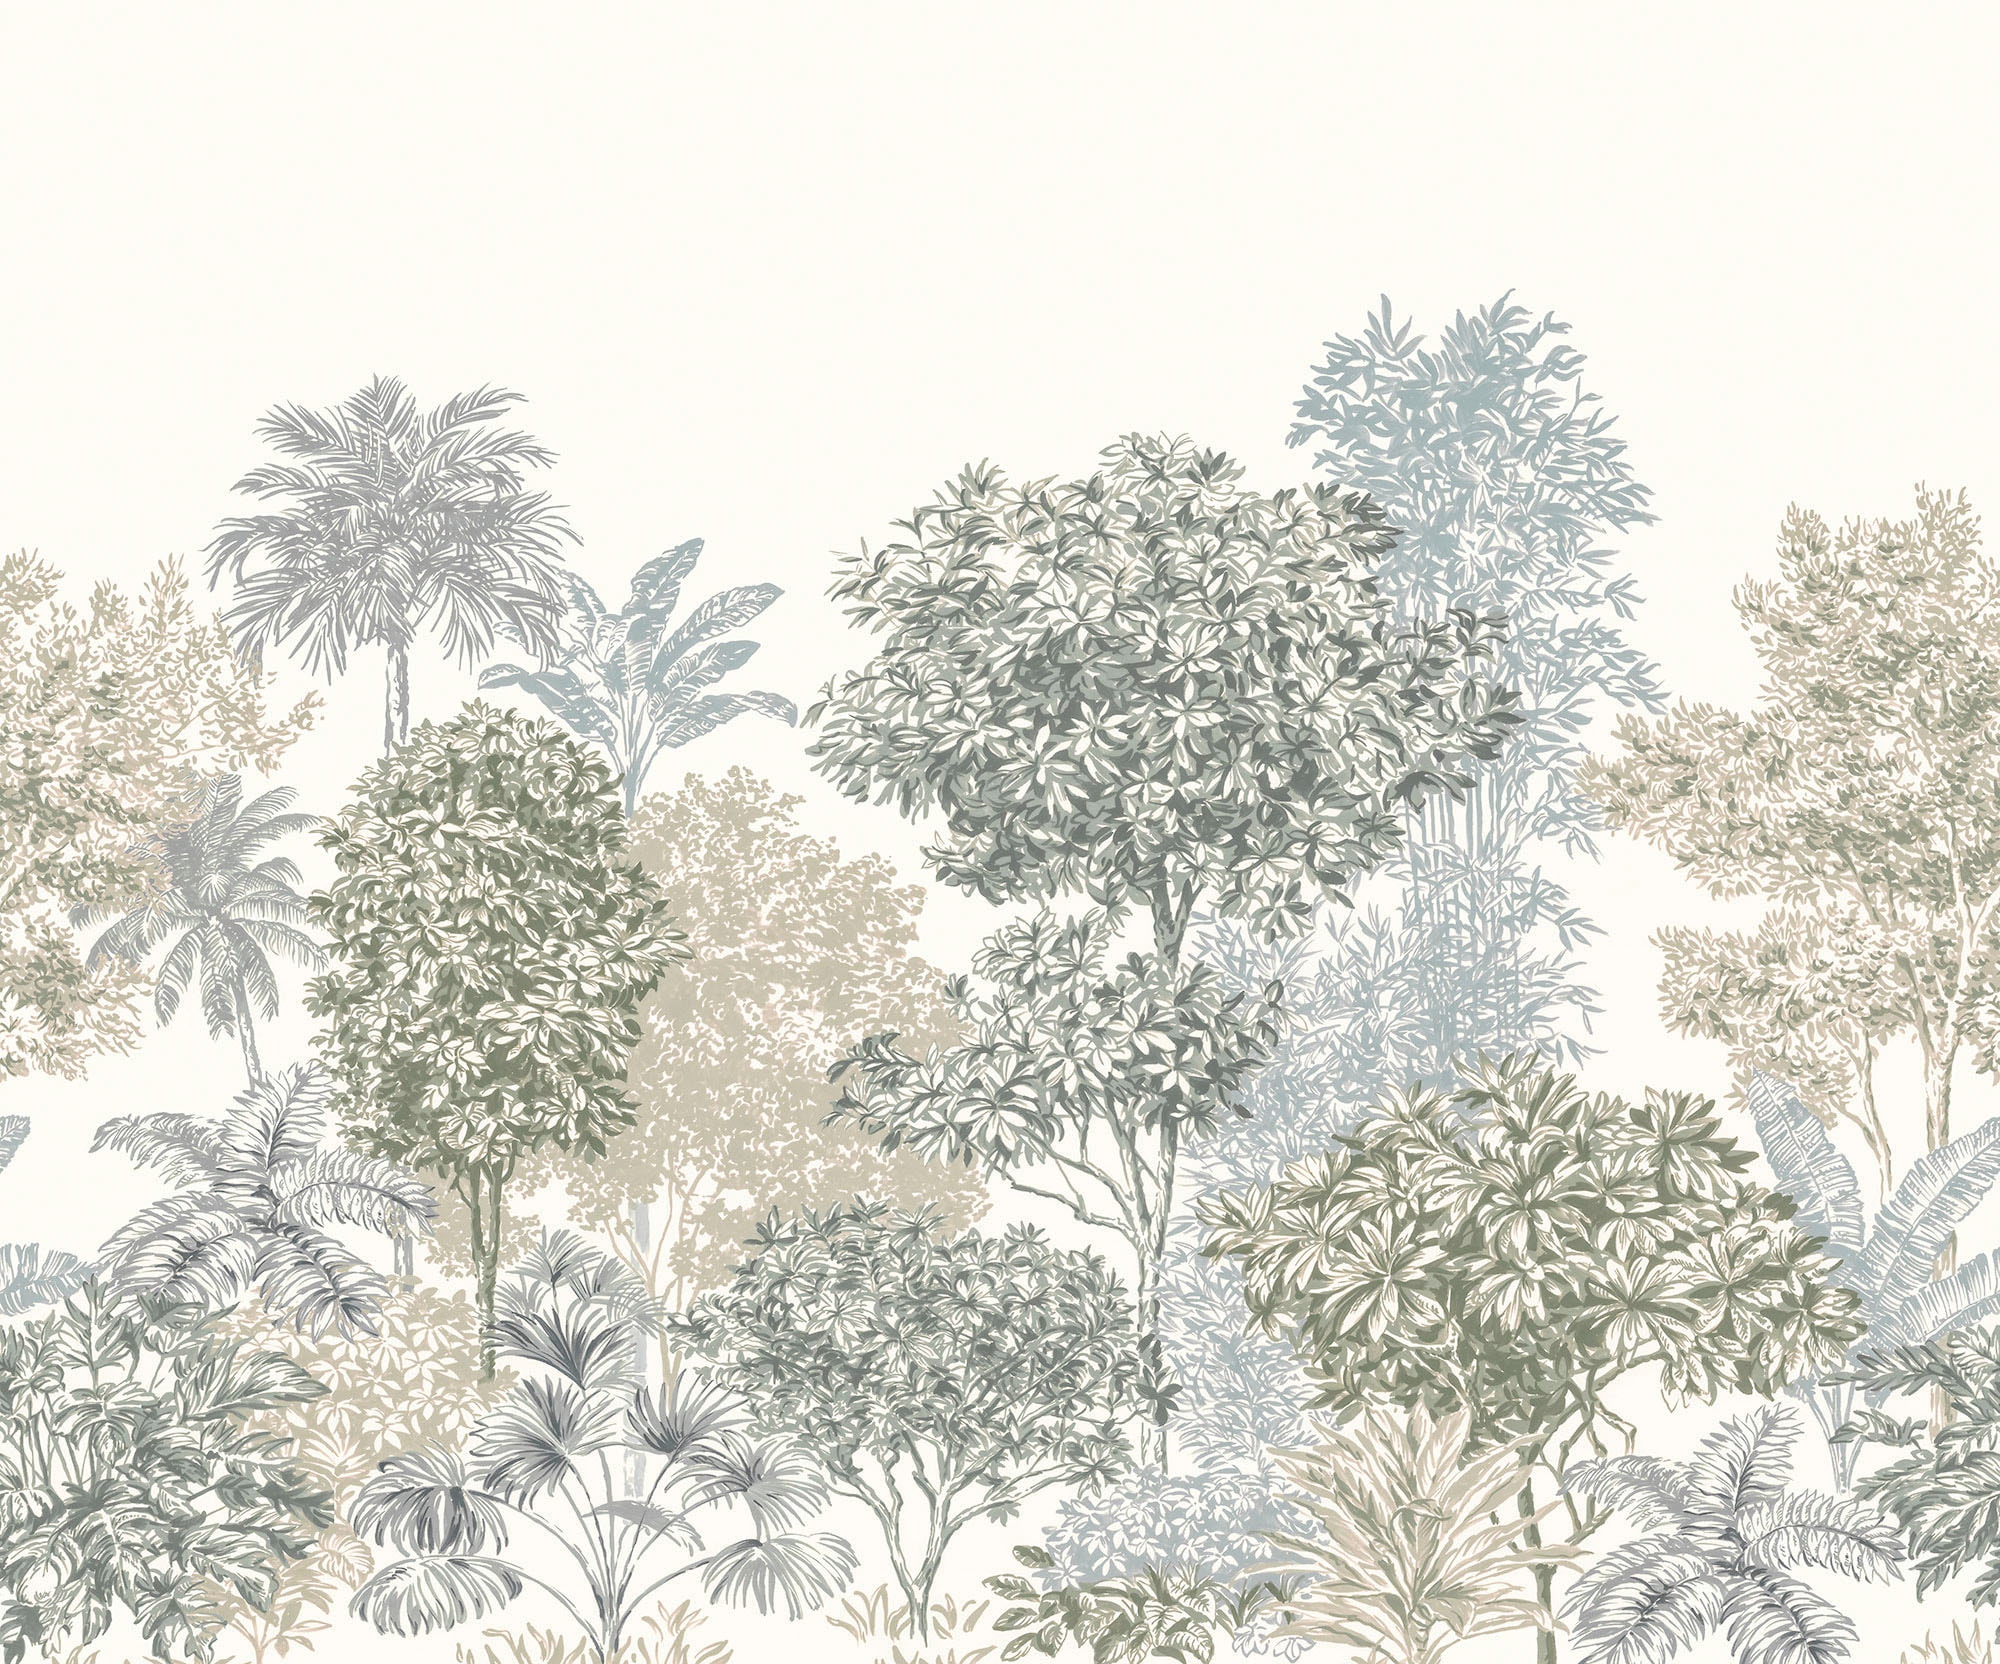 Komar Vliestapete »Painted Palms«, 300x250 cm (Breite x Höhe), Vliestapete, 100 cm Bahnbreite